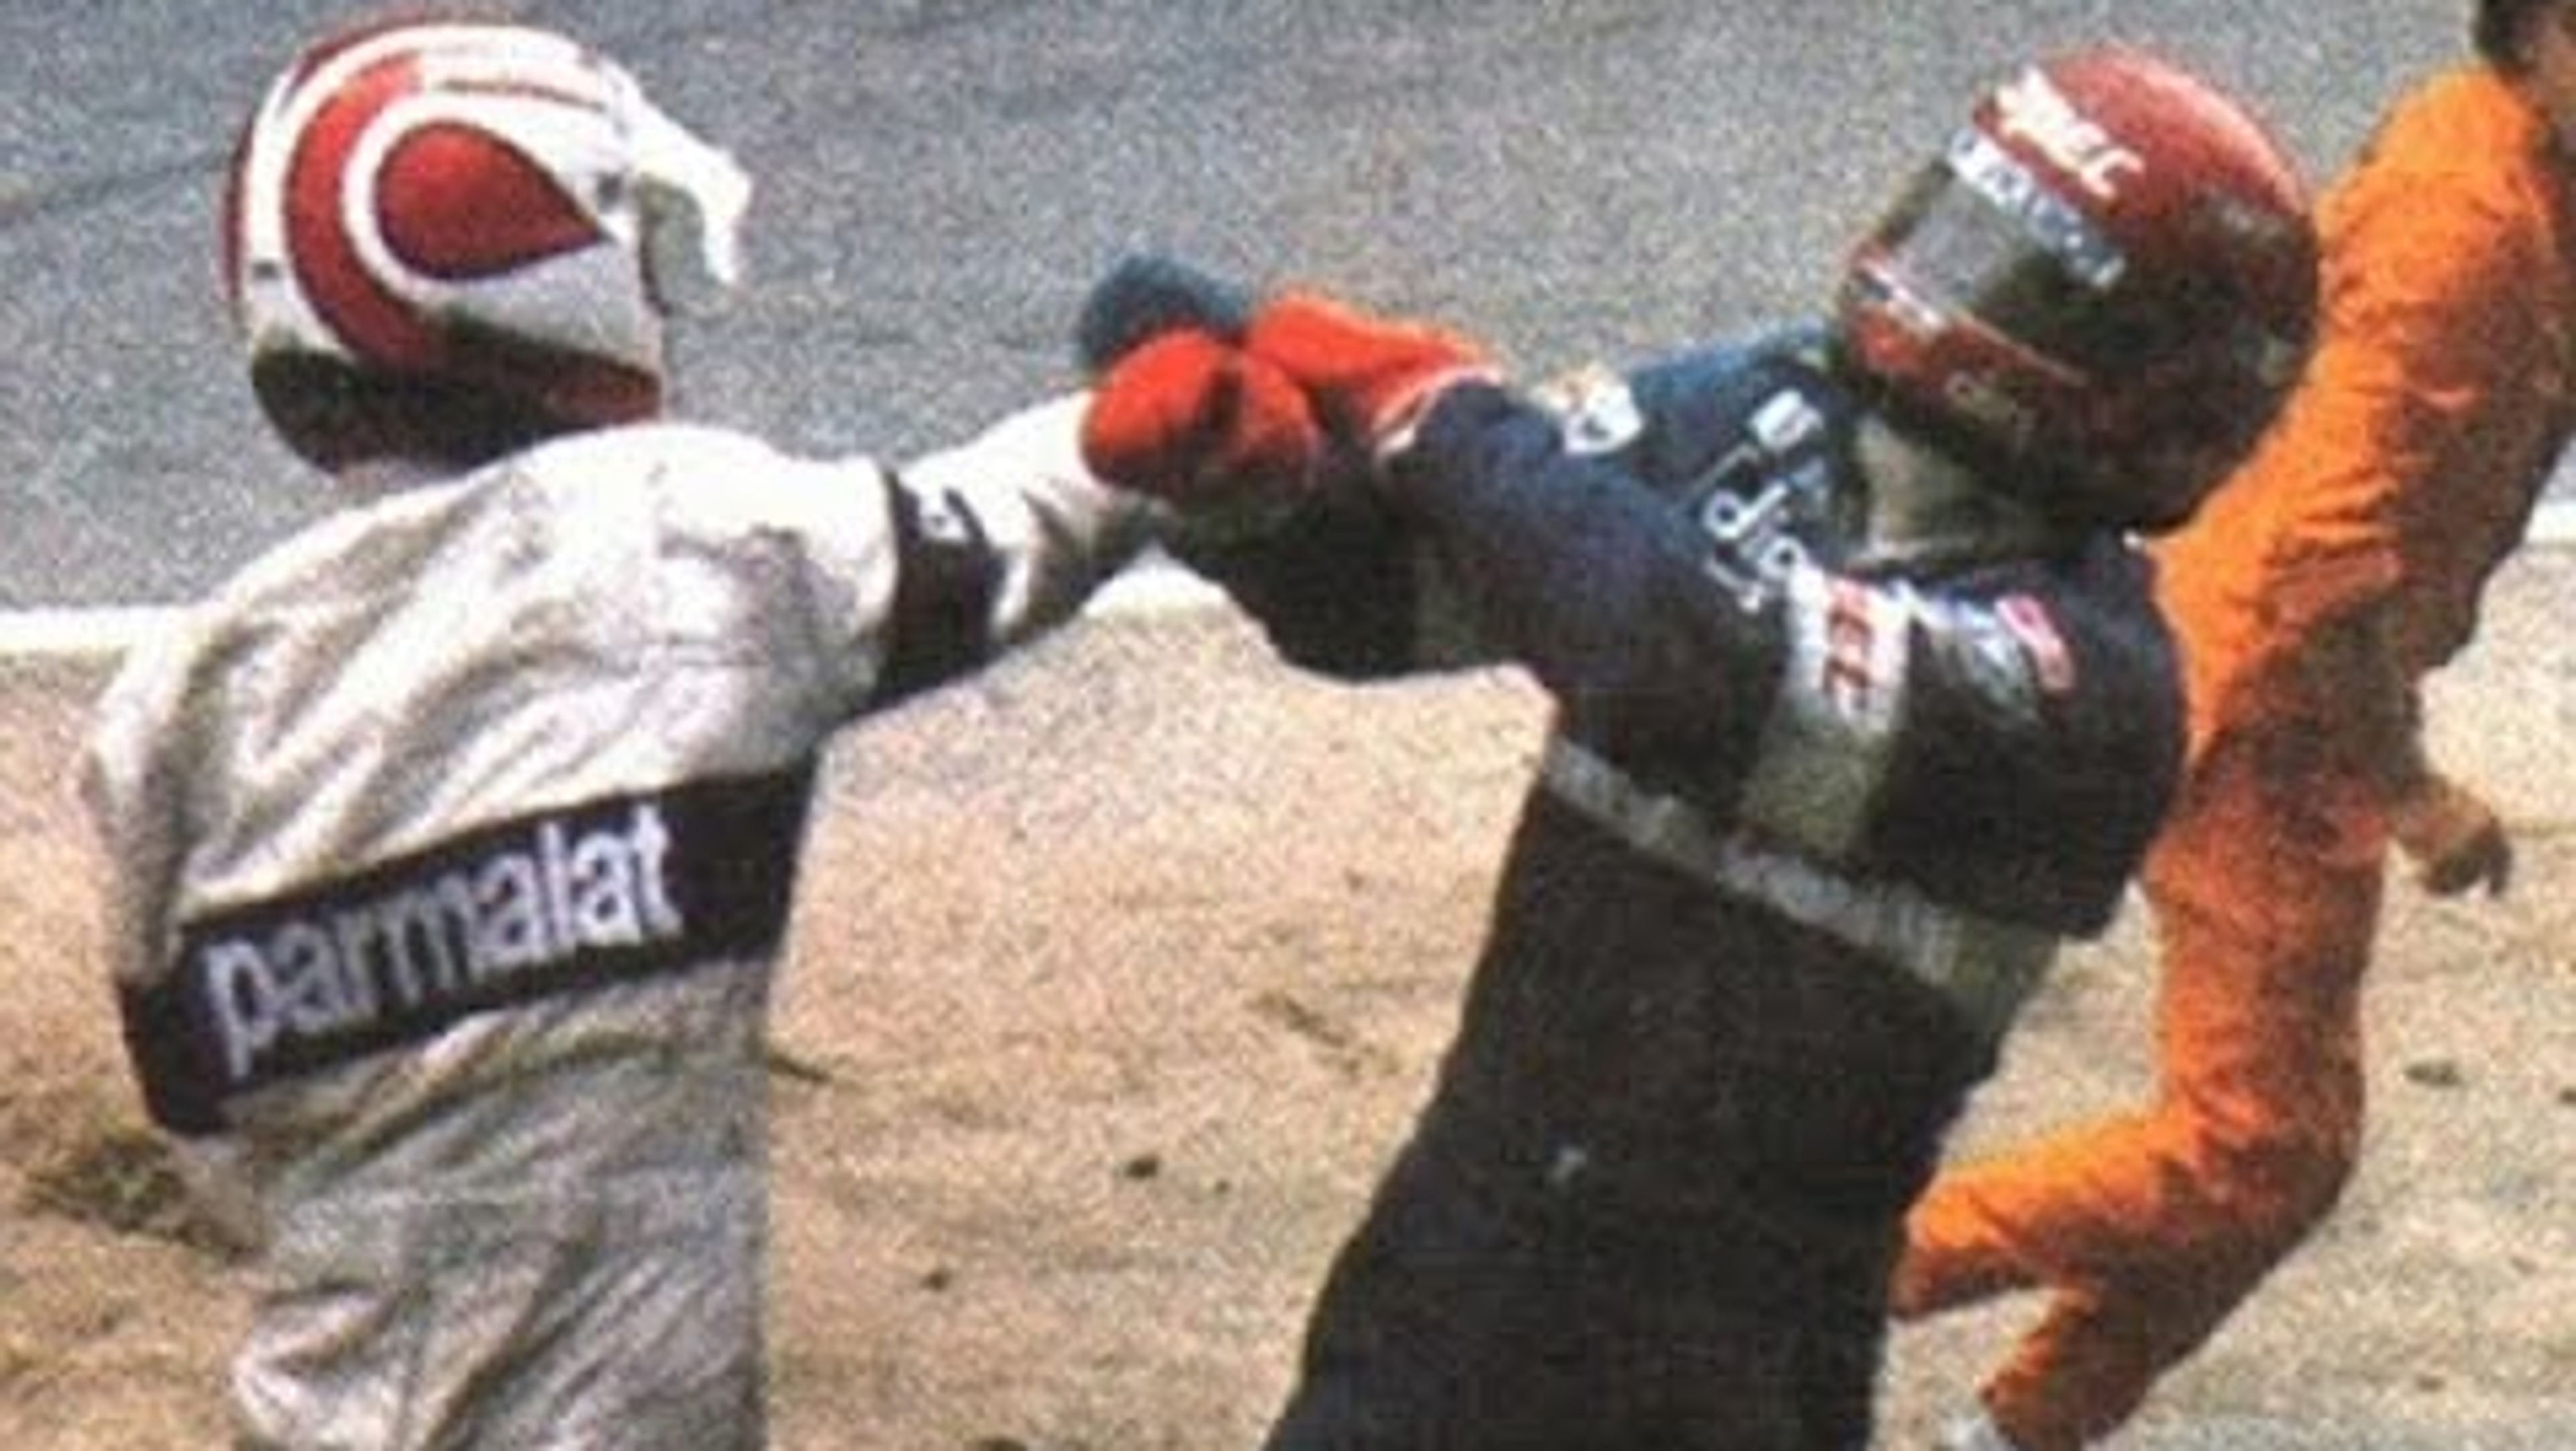 Piquet vs Salazar, en el GP Alemania 1982